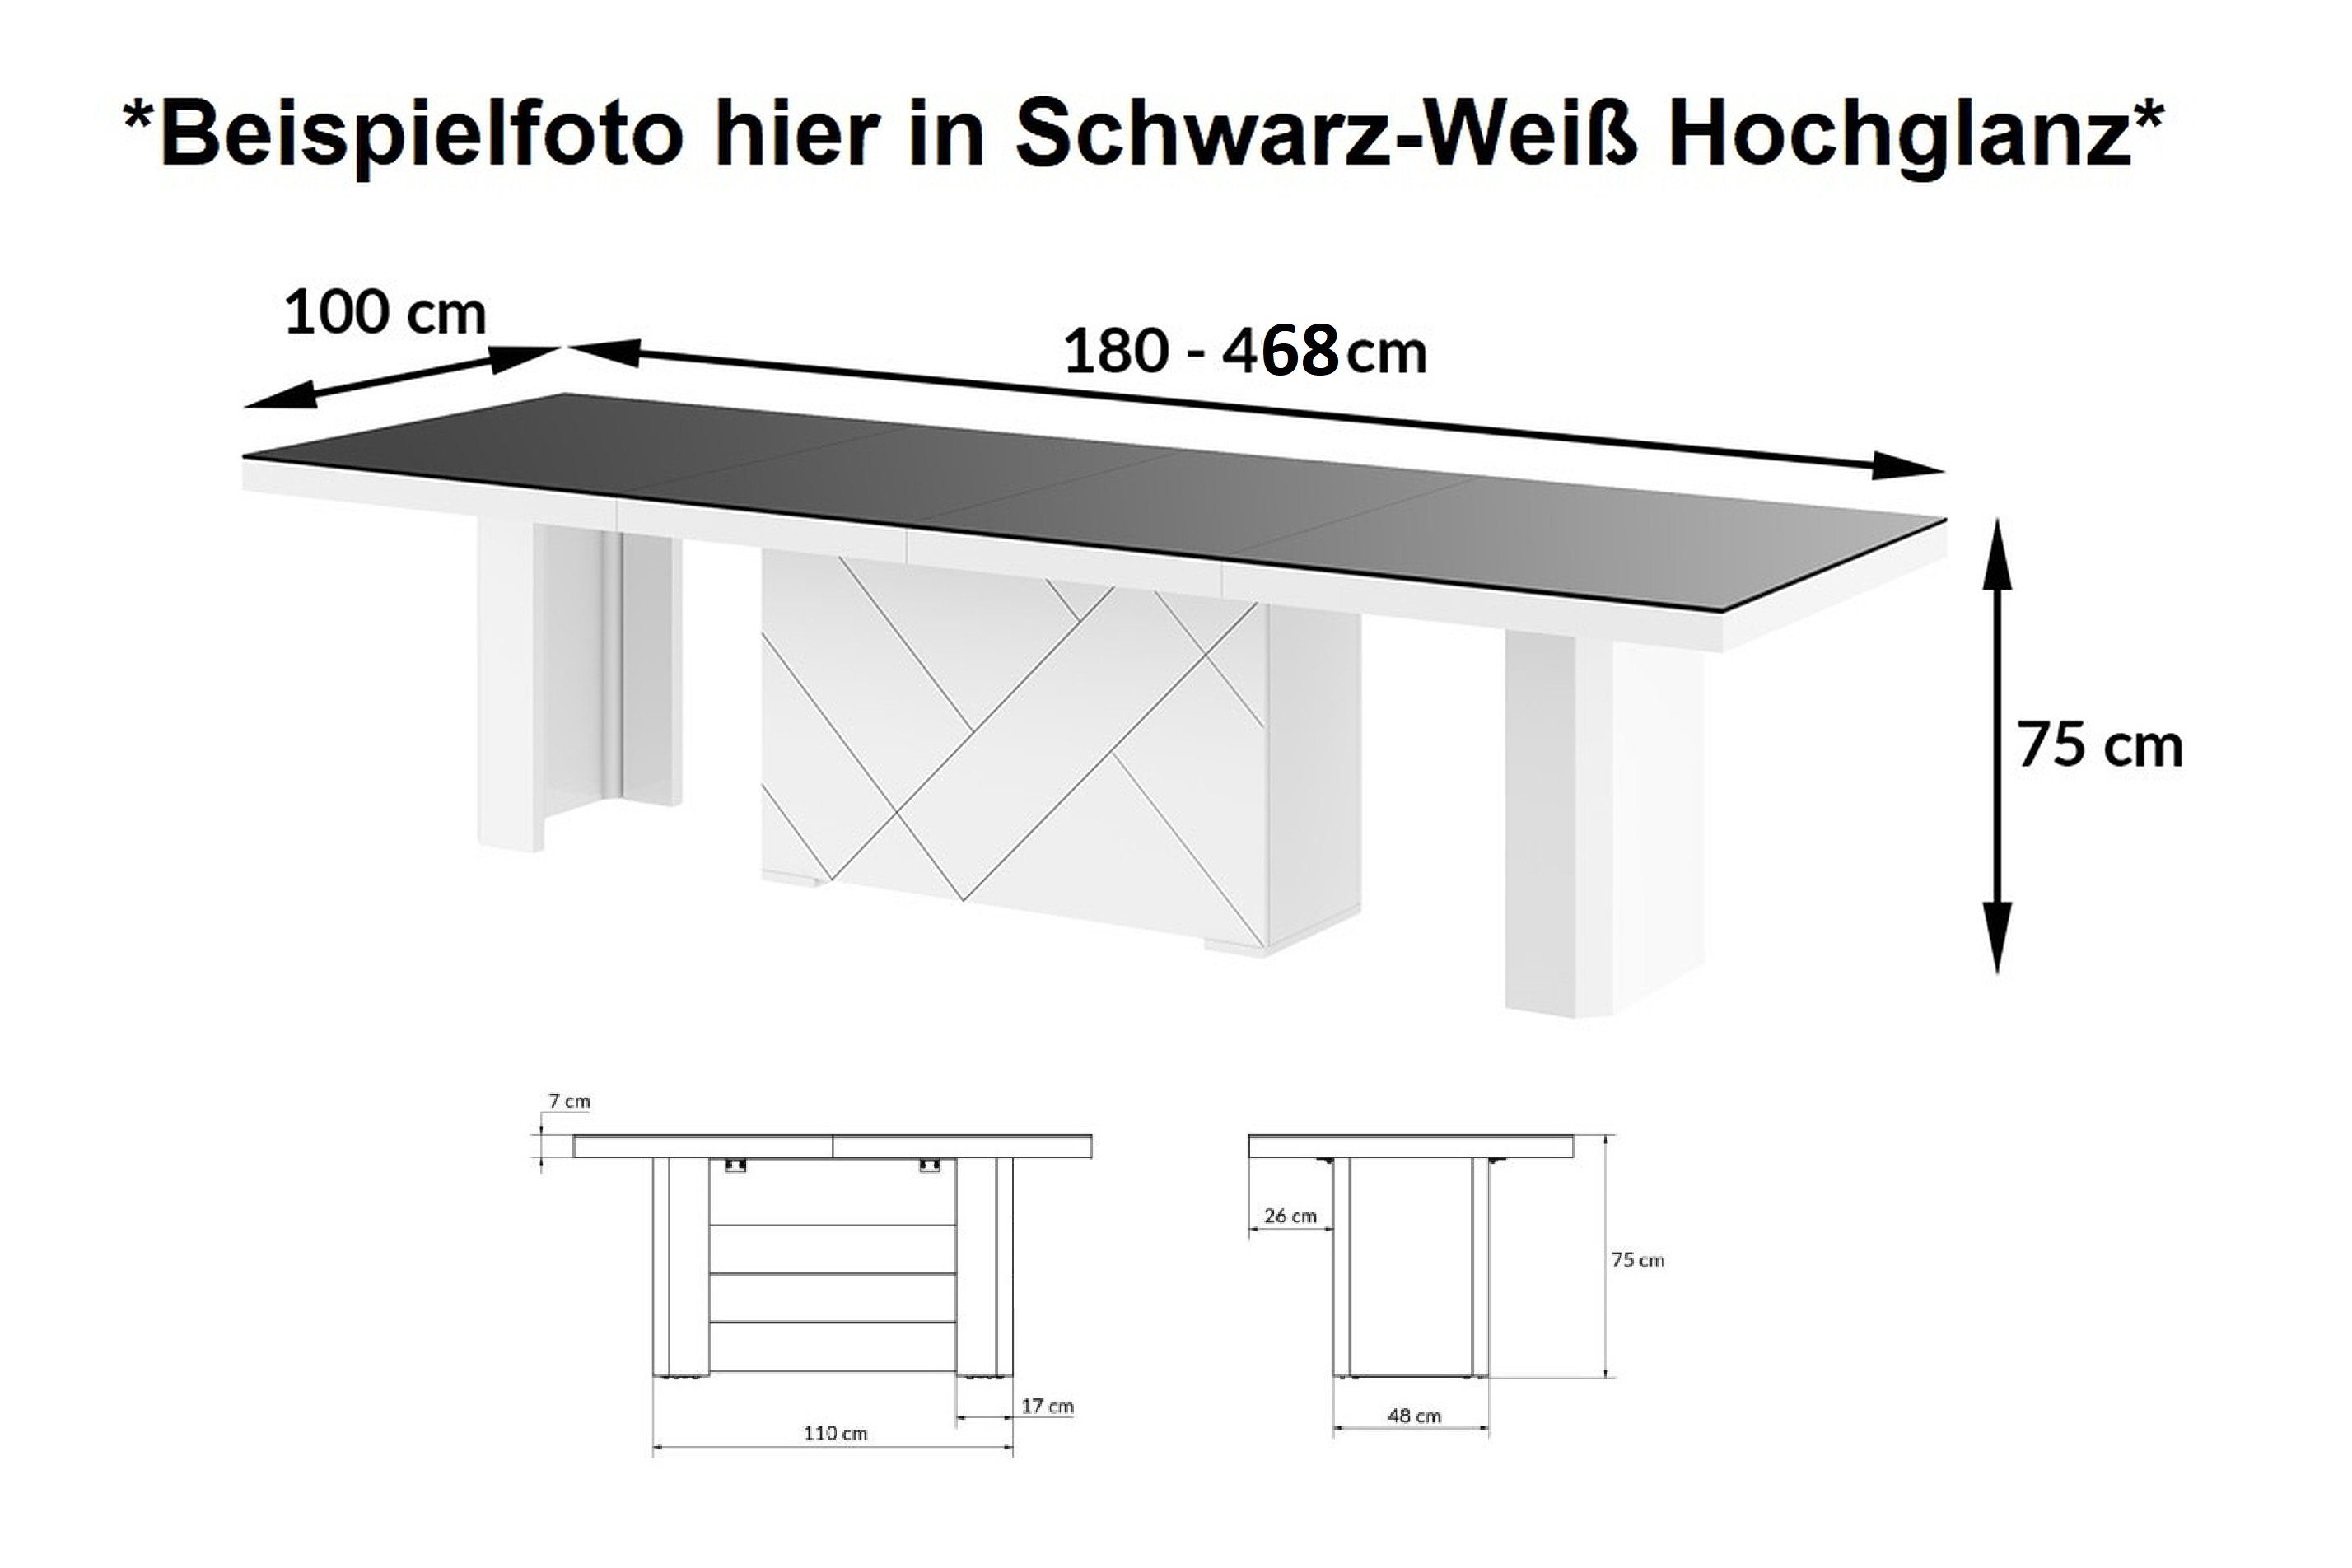 Grau Hochglanz Design ausziehbar designimpex / Hochglanz Esstisch cm Grau XXL bis Weiß / 468 HEK-111 180 Weiß Hochglanz